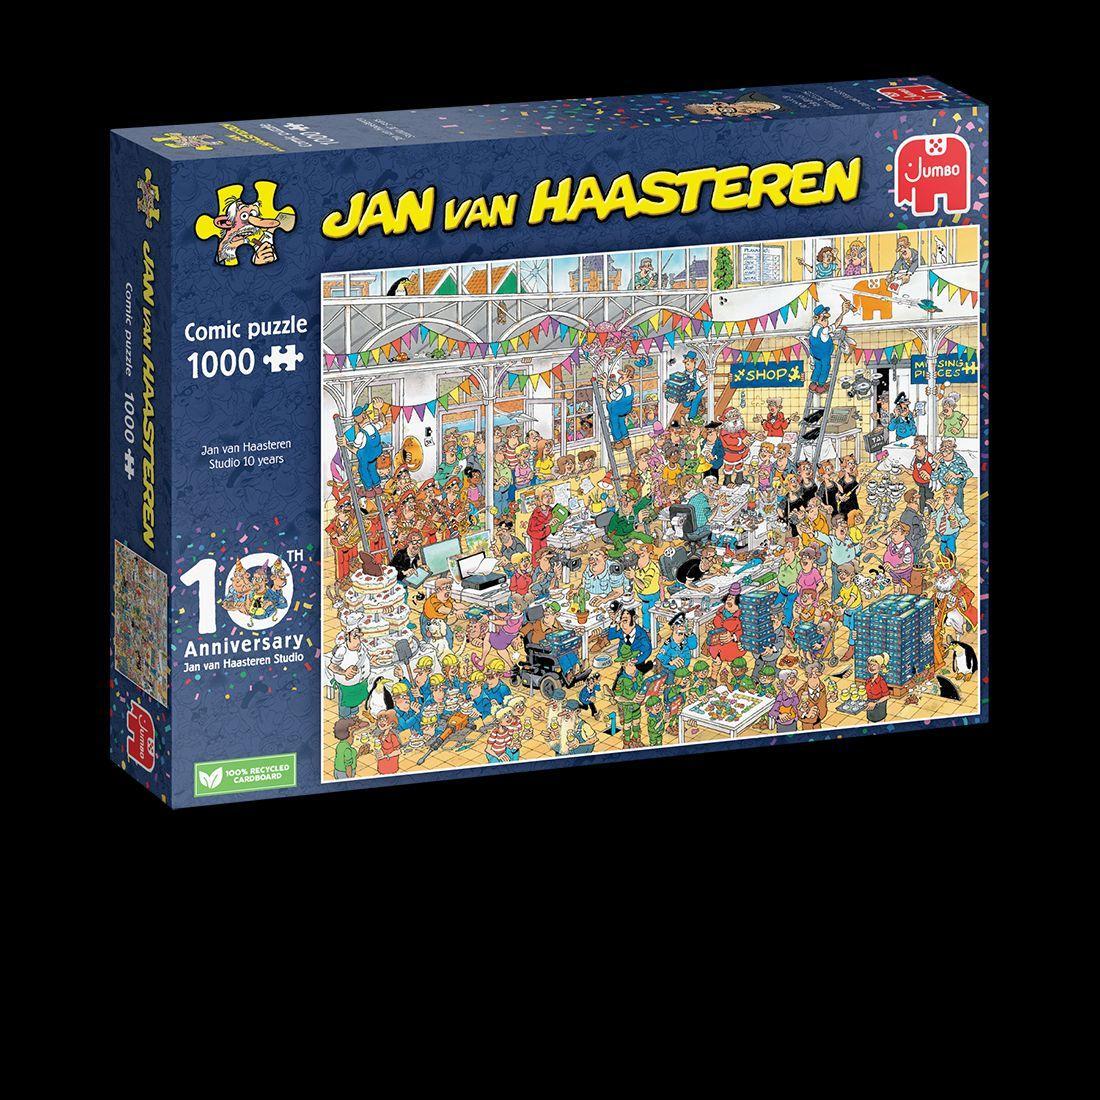 Hra/Hračka Jan van Haasteren - 10 Jahre JvH Studio - 1000 Teile 